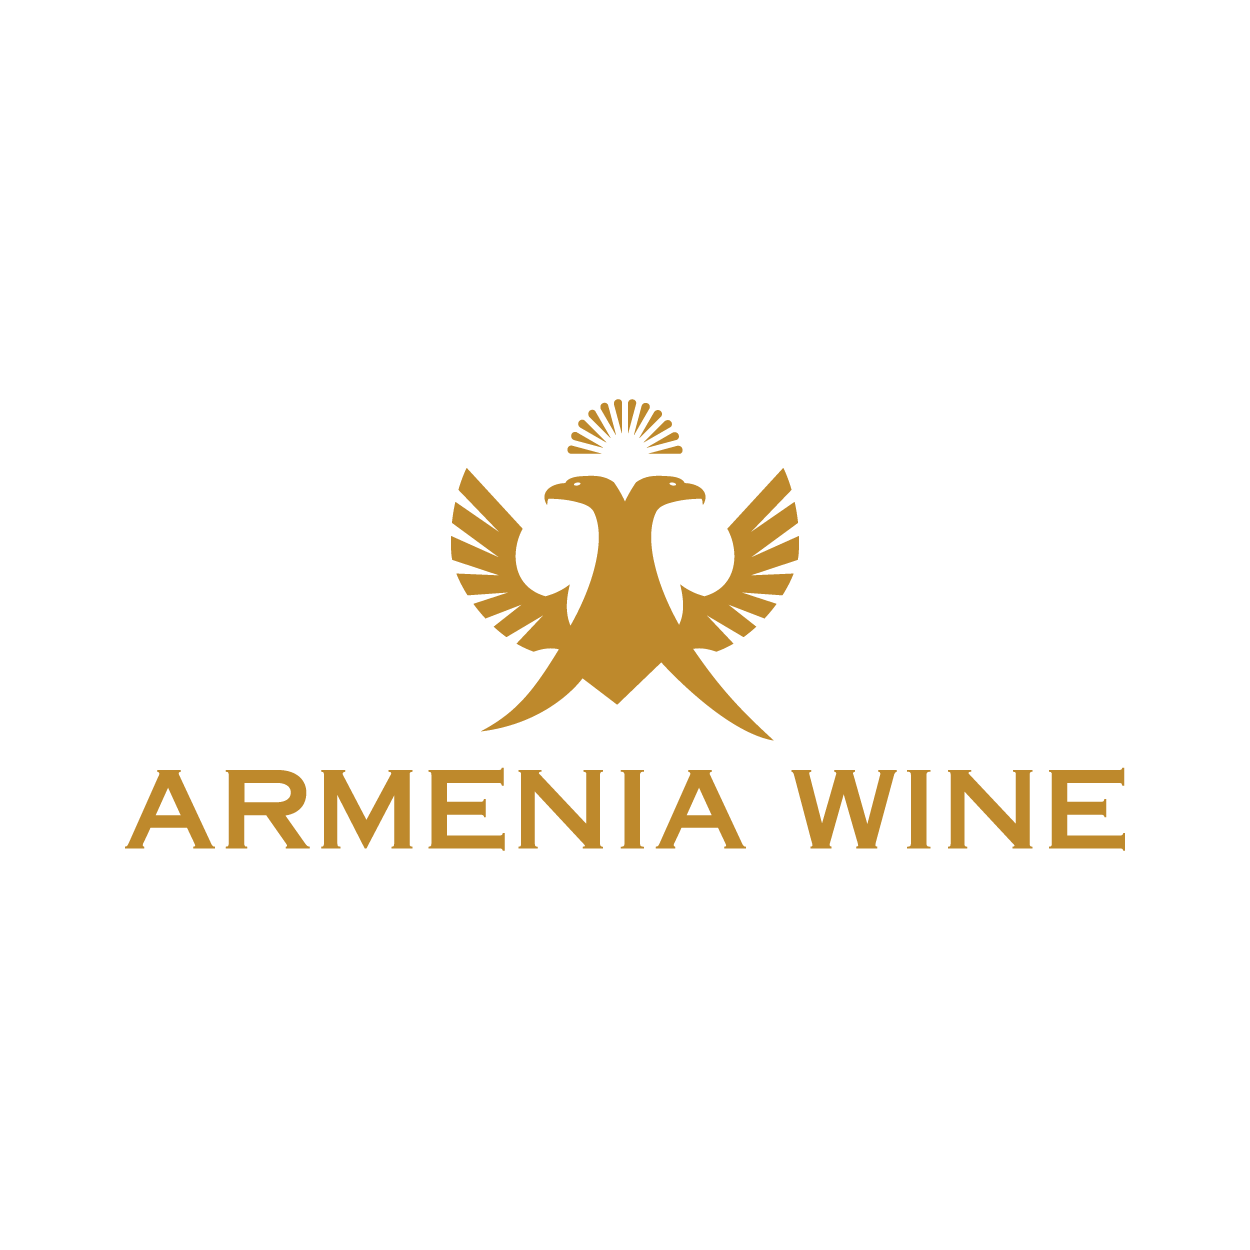 ARMENIA WINE logo 300x300-01